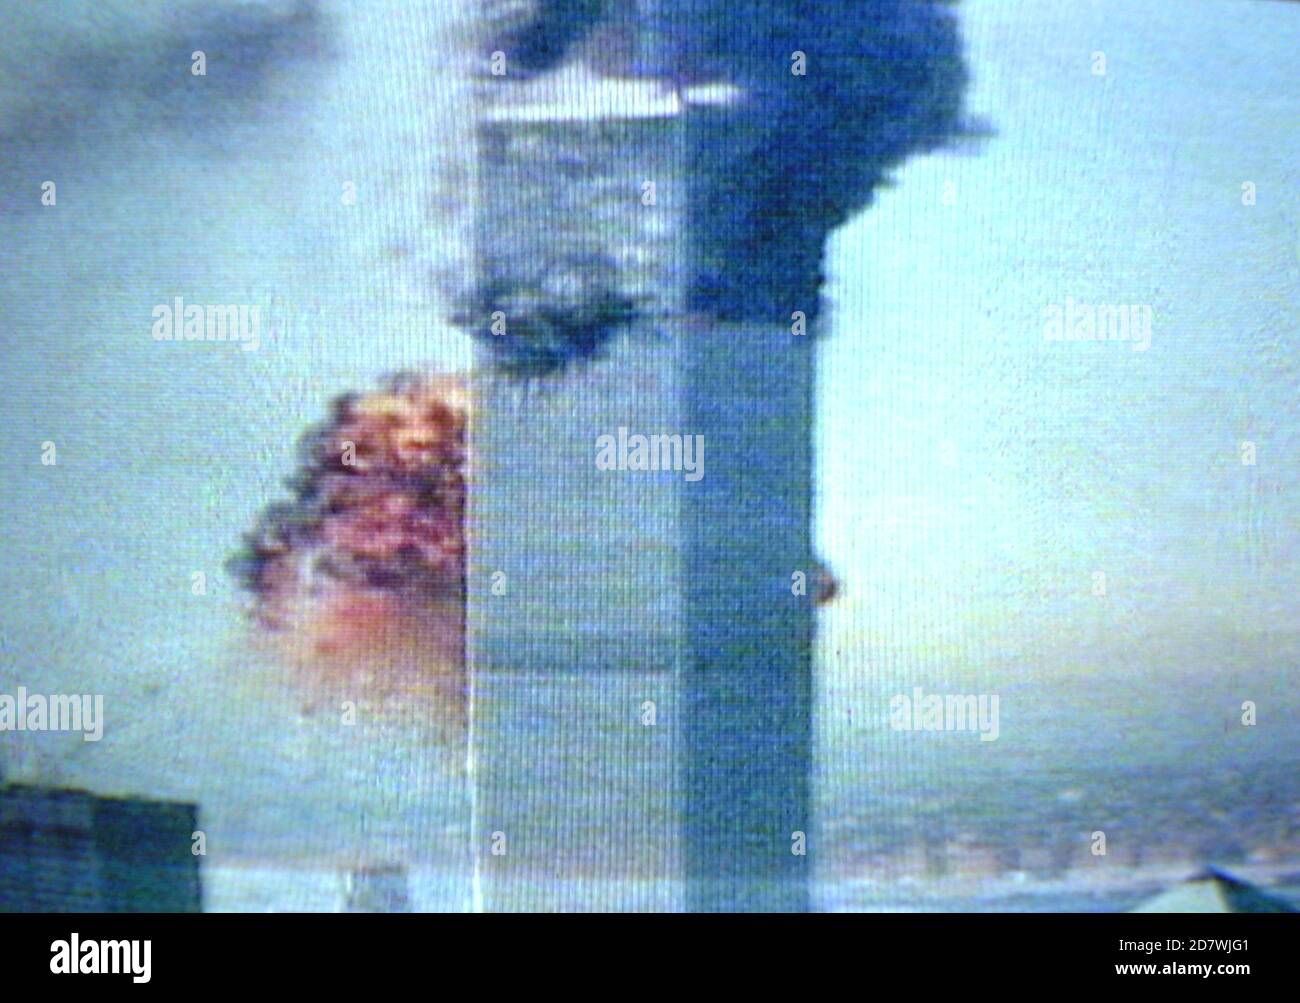 AJAXNETPHOTO. 11 SETTEMBRE 2001. MANHATTAN, NEW YORK CITY, USA - 9/11 MOMENTO DI IMPATTO. - TV NEWS LIVE BROADCAST SCHERMATA AFFERRARE DEL MOMENTO UNITED AIRLINES VOLO 175 SCHIAFFATO NELLA TORRE SUD DEL CENTRO COMMERCIALE MONDIALE COME VISTO DA MILIONI DI T.V. OSSERVATORI DEL PEGGIOR ATTACCO TERRORISTICO SUL SUOLO AMERICANO. LA WTC NORTH TOWER STA GIÀ BRUCIANDO PIÙ IN ALTO RISPETTO AL PRECEDENTE IMPATTO DEL VOLO AMERICAN AIRLINES 11. ENTRAMBE LE TORRI SONO STATE DISTRUTTE DURANTE L'ATTACCO. PHOTO:JONATHAN EASTLAND/AJAX REF:D011109 15 Foto Stock